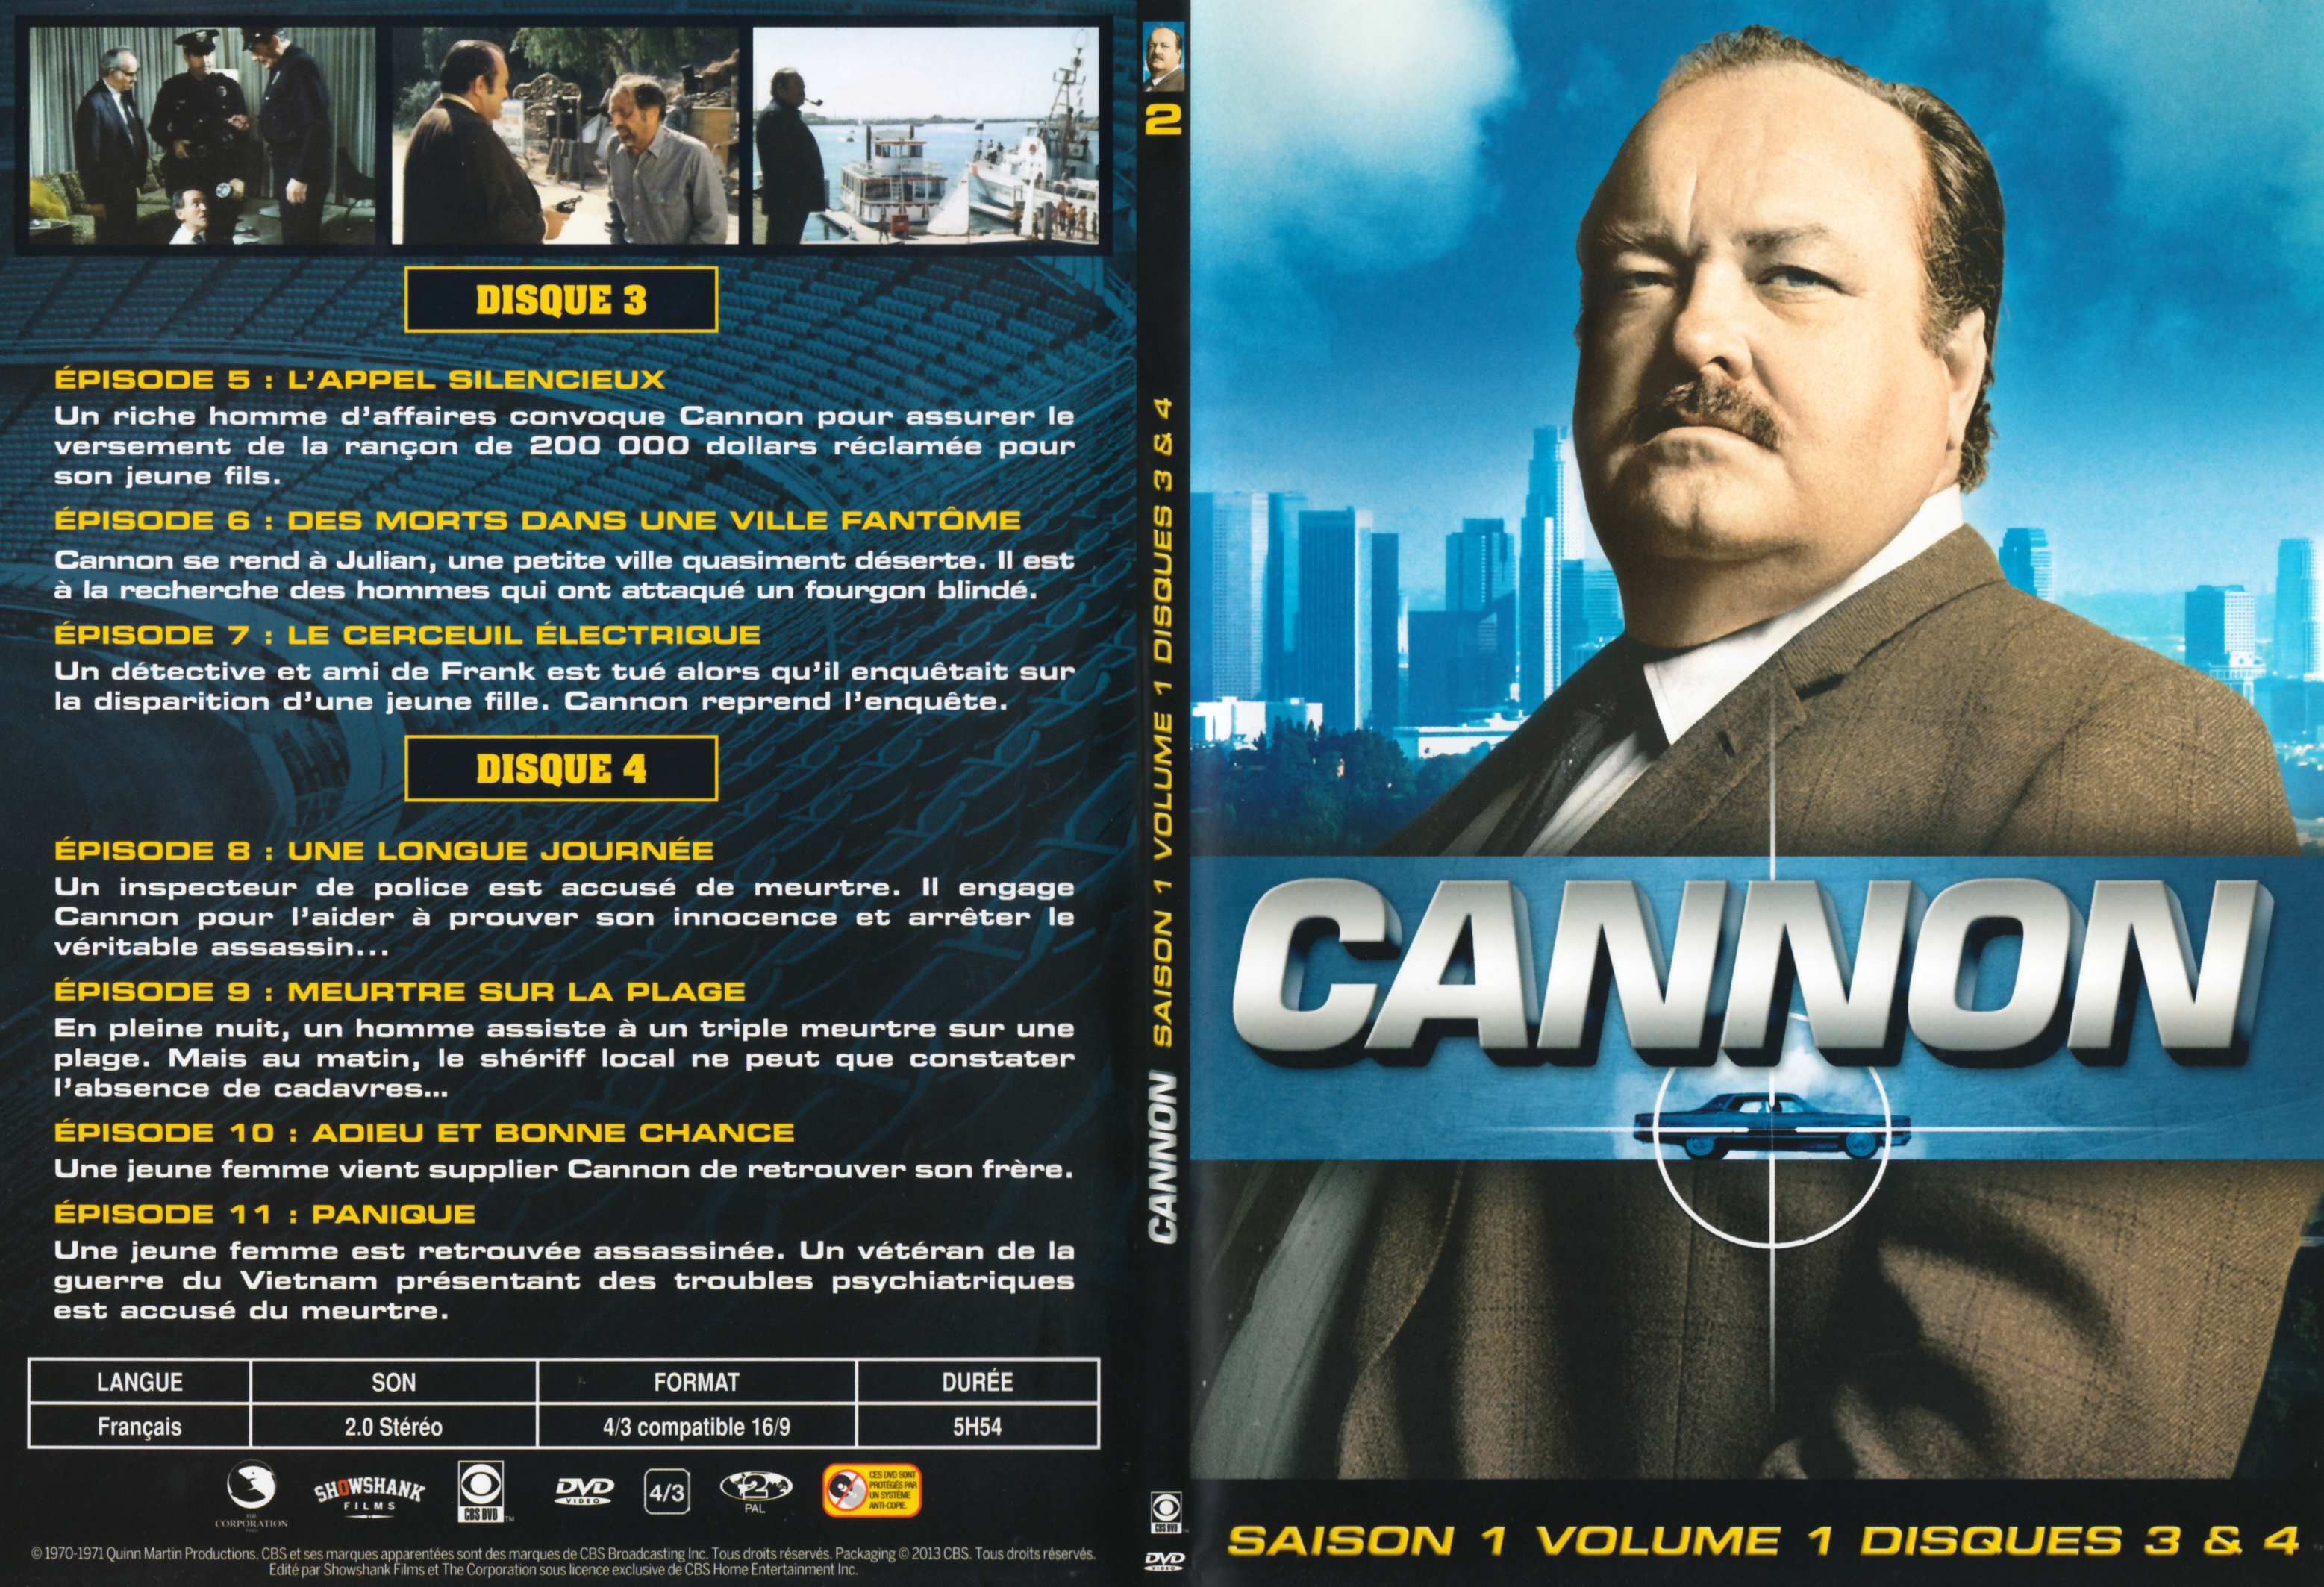 Jaquette DVD Cannon Saison 1 Vol 1 DVD 2